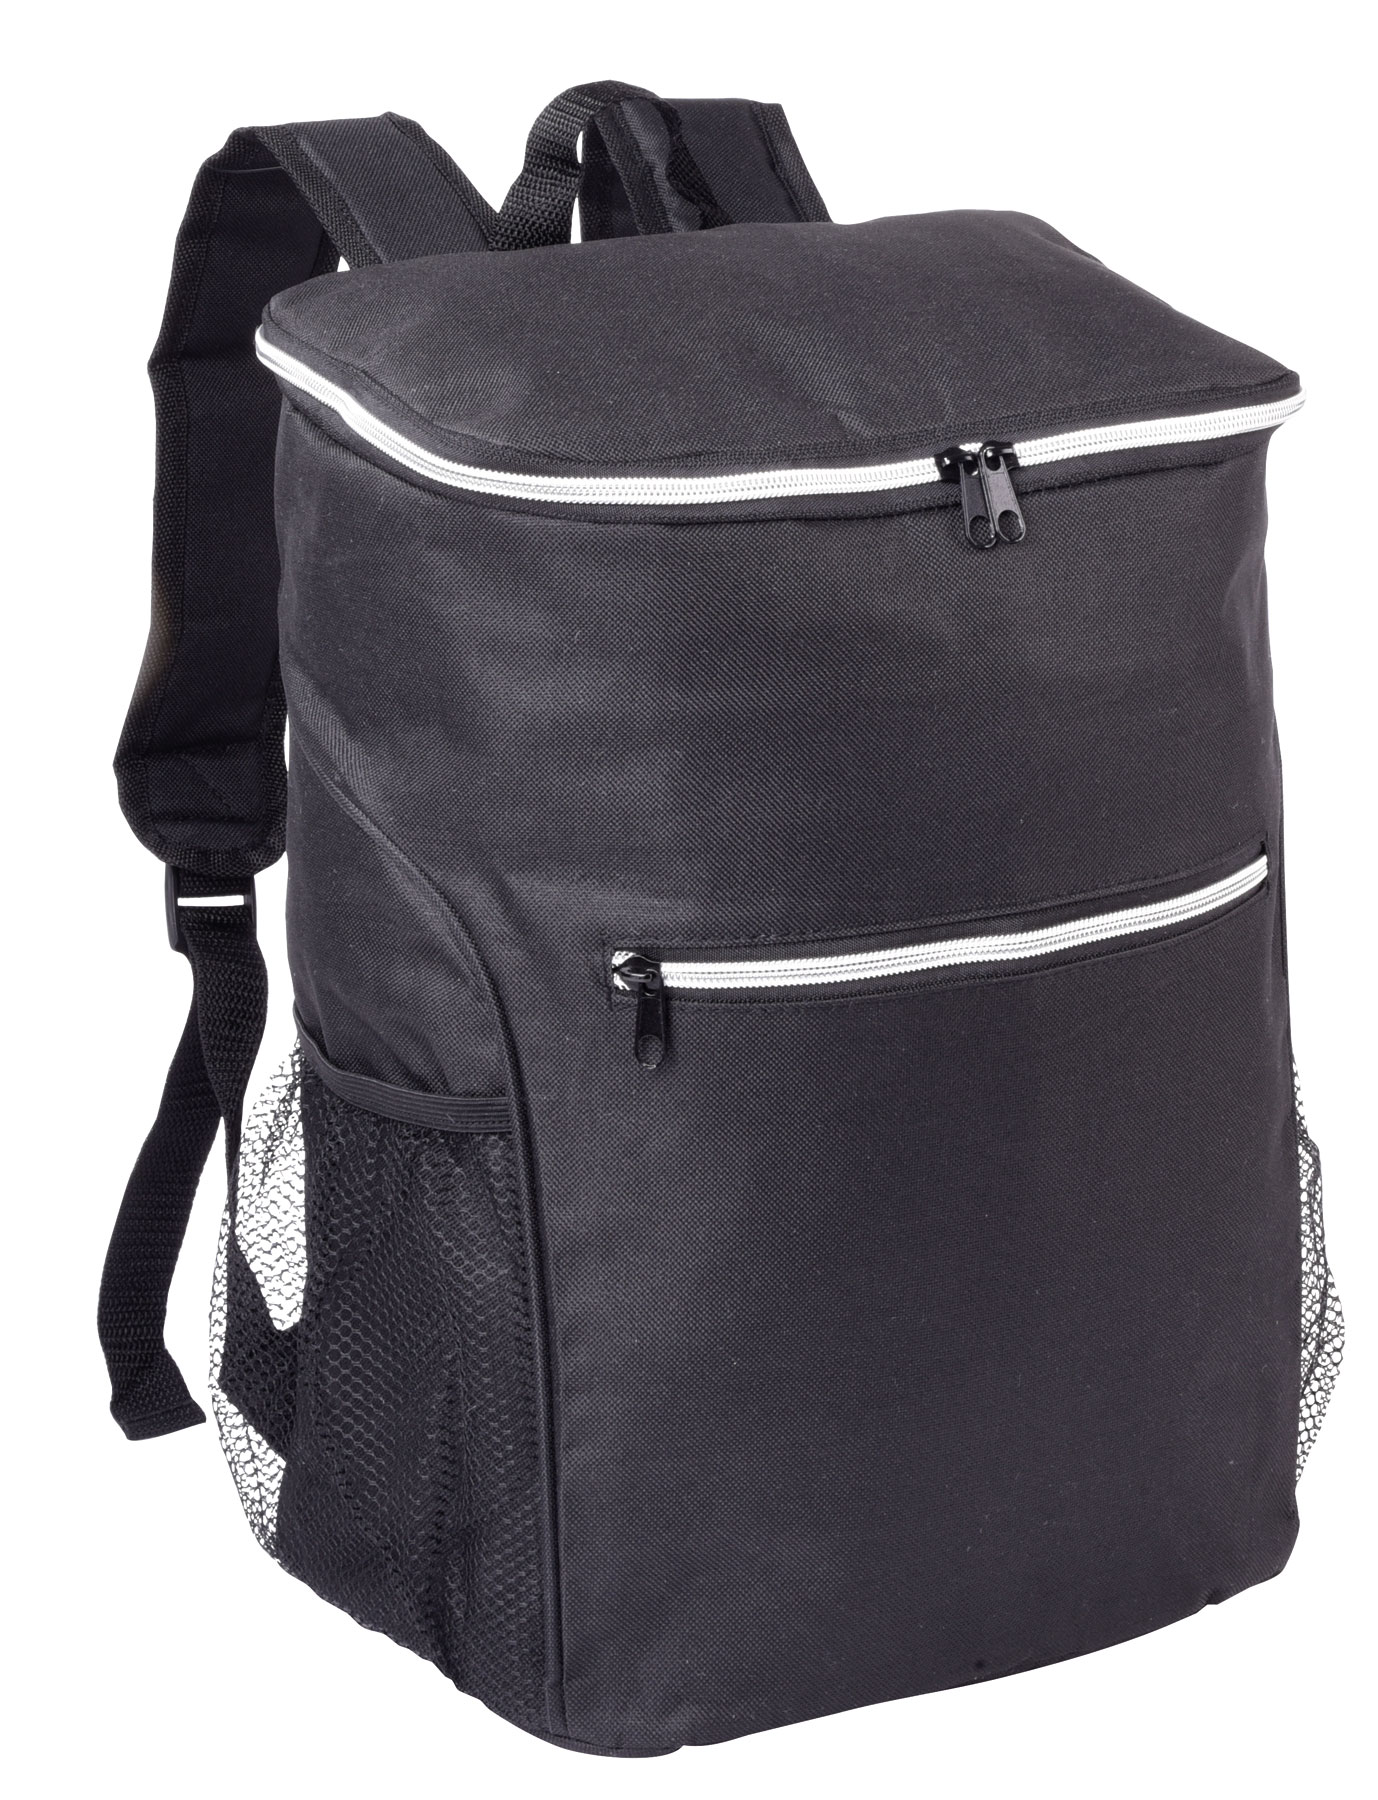 Cooling backpack NOME - black